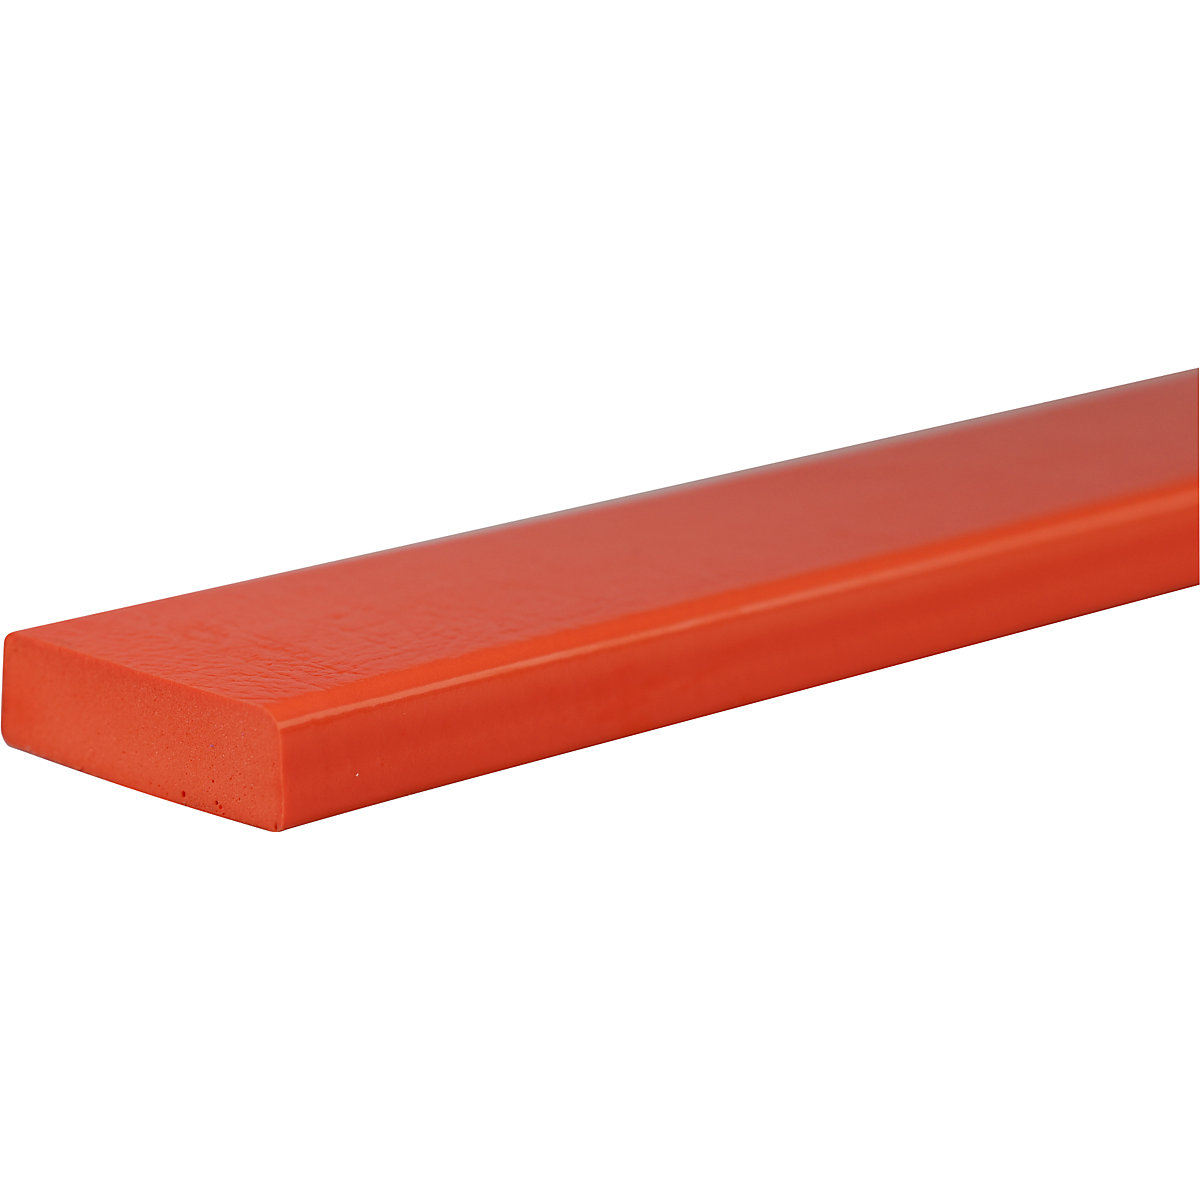 Protection des surfaces Knuffi® – SHG, type S, pièce de 1 mètre, rouge